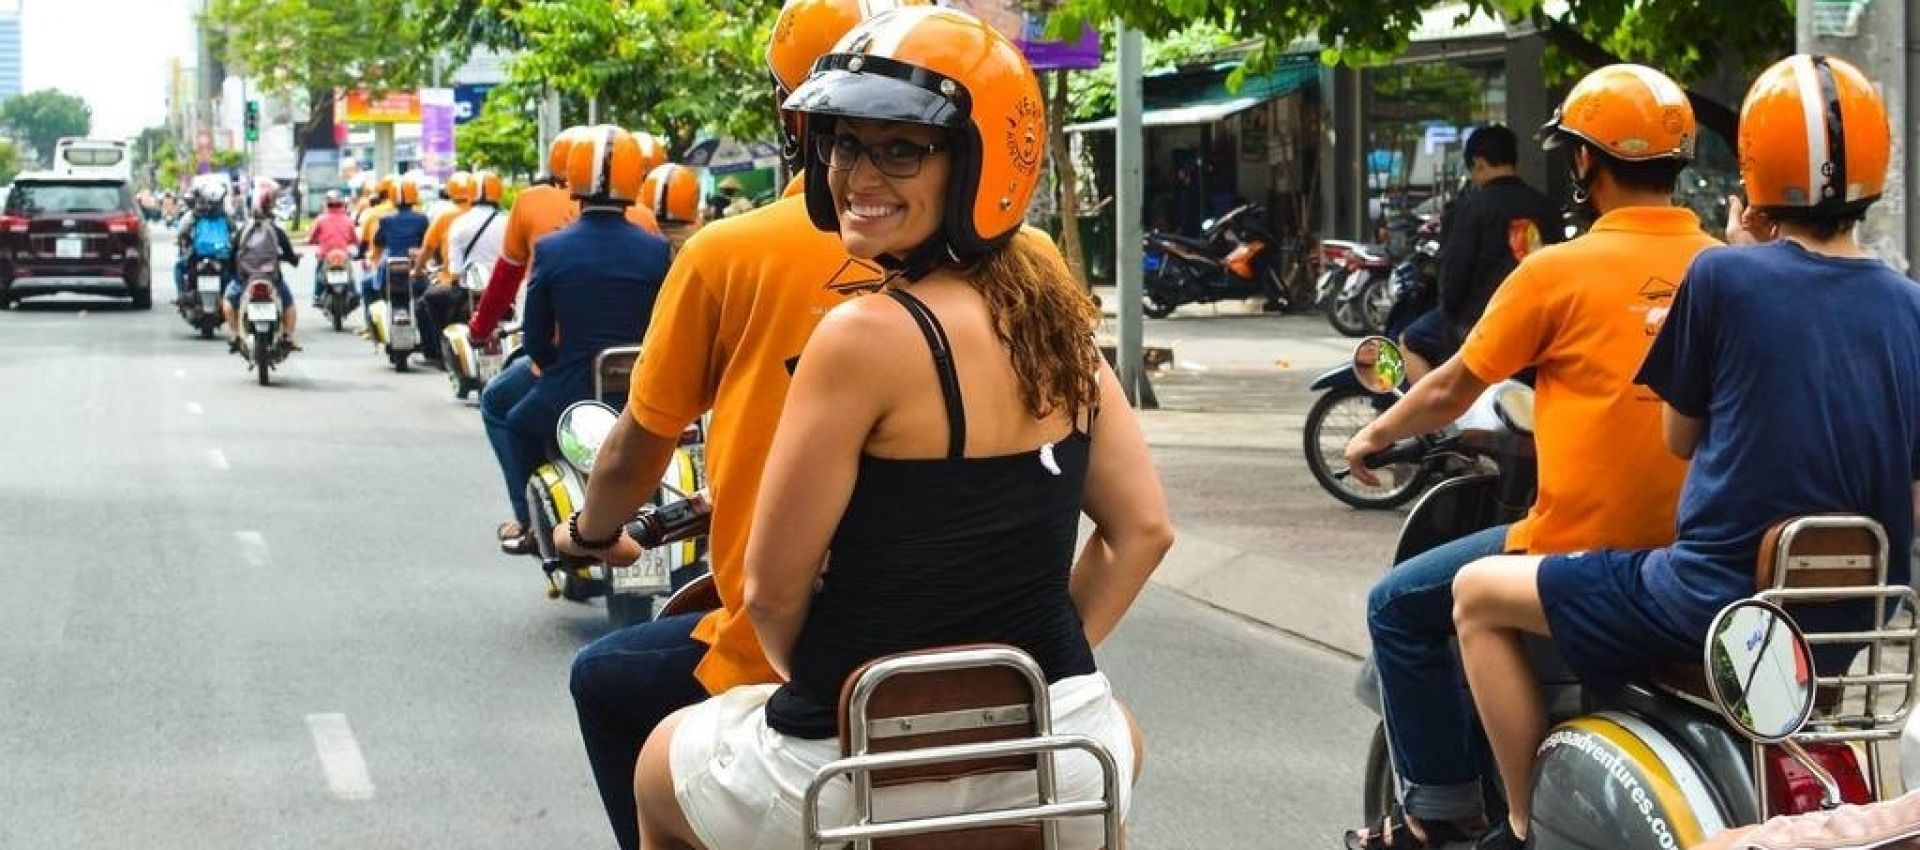 Vietnam Motorbike Tour - 1 Day Hanoi & Typical Village